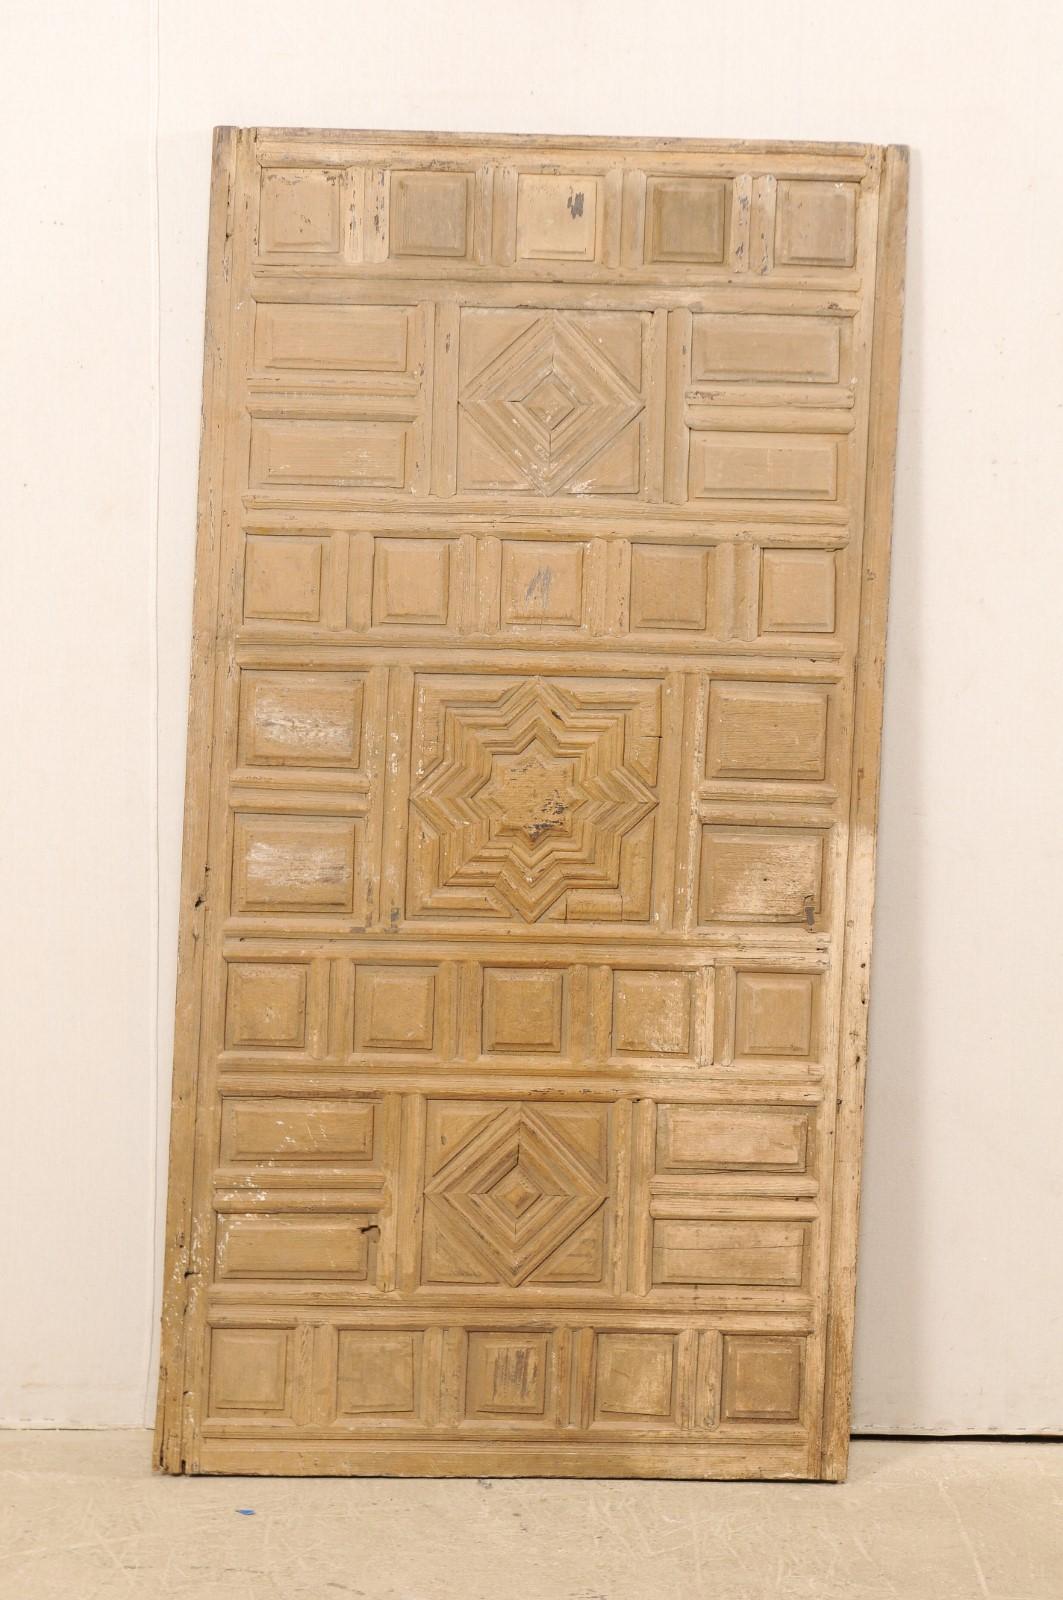 Un seul panneau mural espagnol en bois sculpté du début du XIXe siècle. Cette décoration murale ancienne d'Espagne présente un panneau frontal en relief composé de formes géométriques variées, avec une étoile d'influence mauresque au centre. La